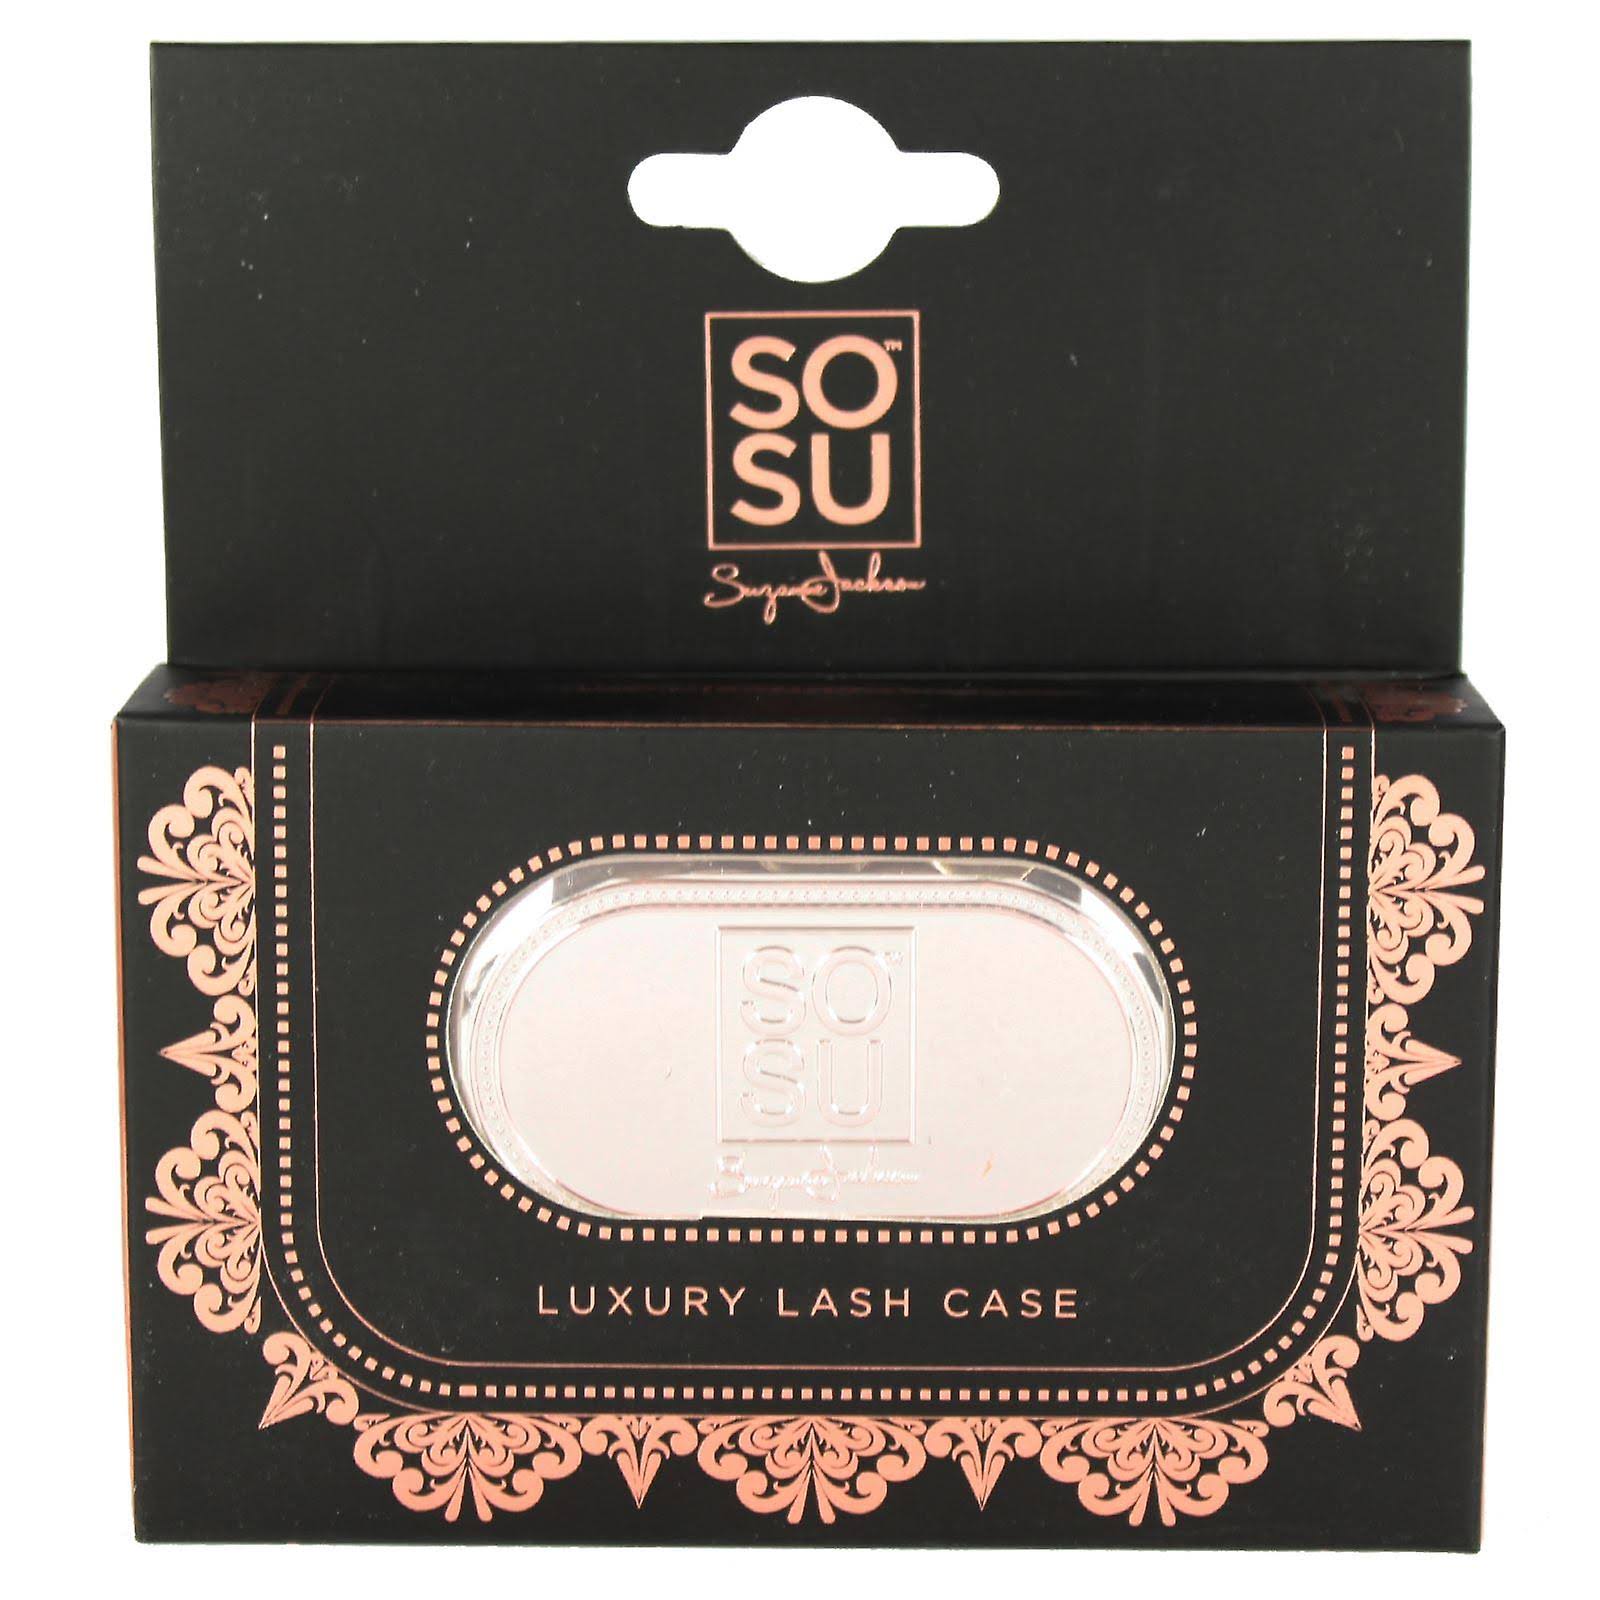 SOSU Luxury Lash Case